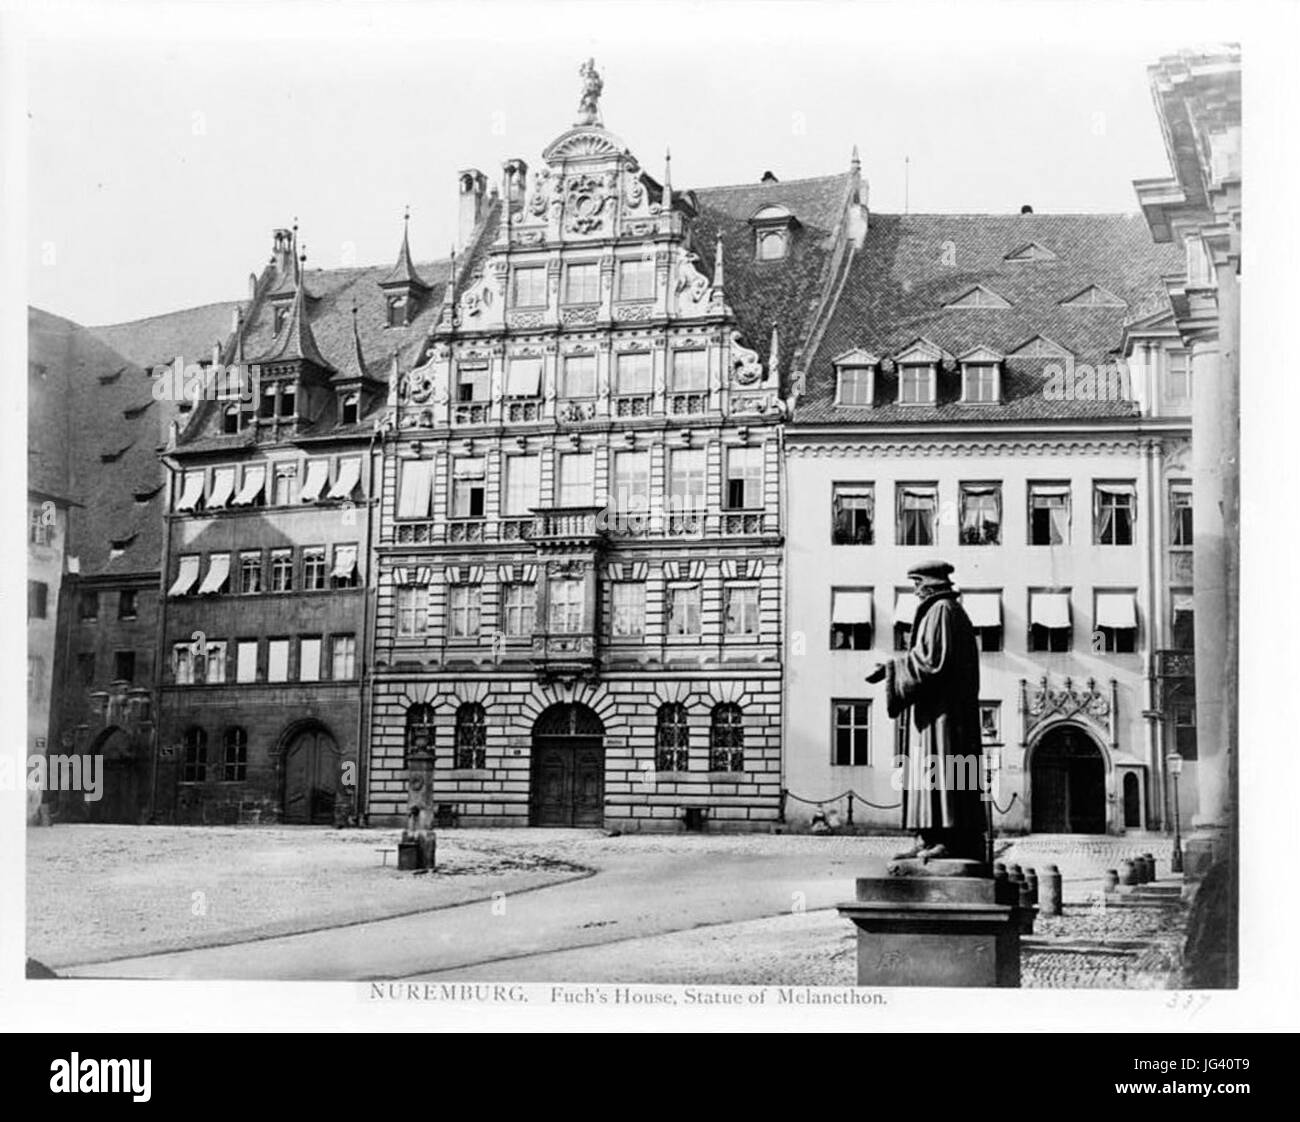 Nürnberg Pellerhaus 001 Stock Photo